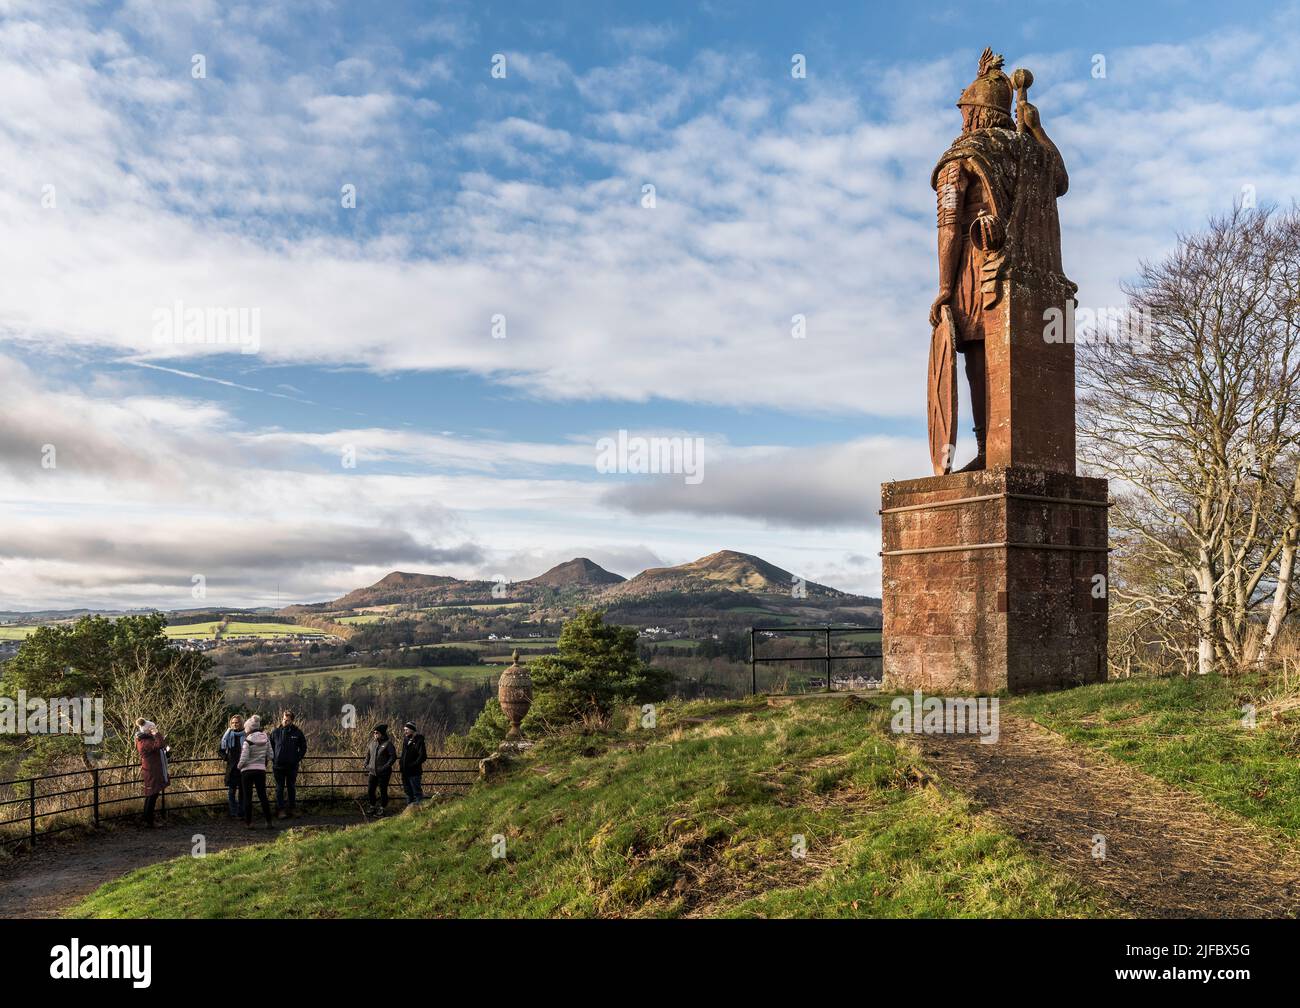 Statue de William Wallace ; collines d'Eildon et une grande vue sur la campagne des frontières en arrière-plan ; visite de la partie de bus des touristes en face de la statue. Banque D'Images